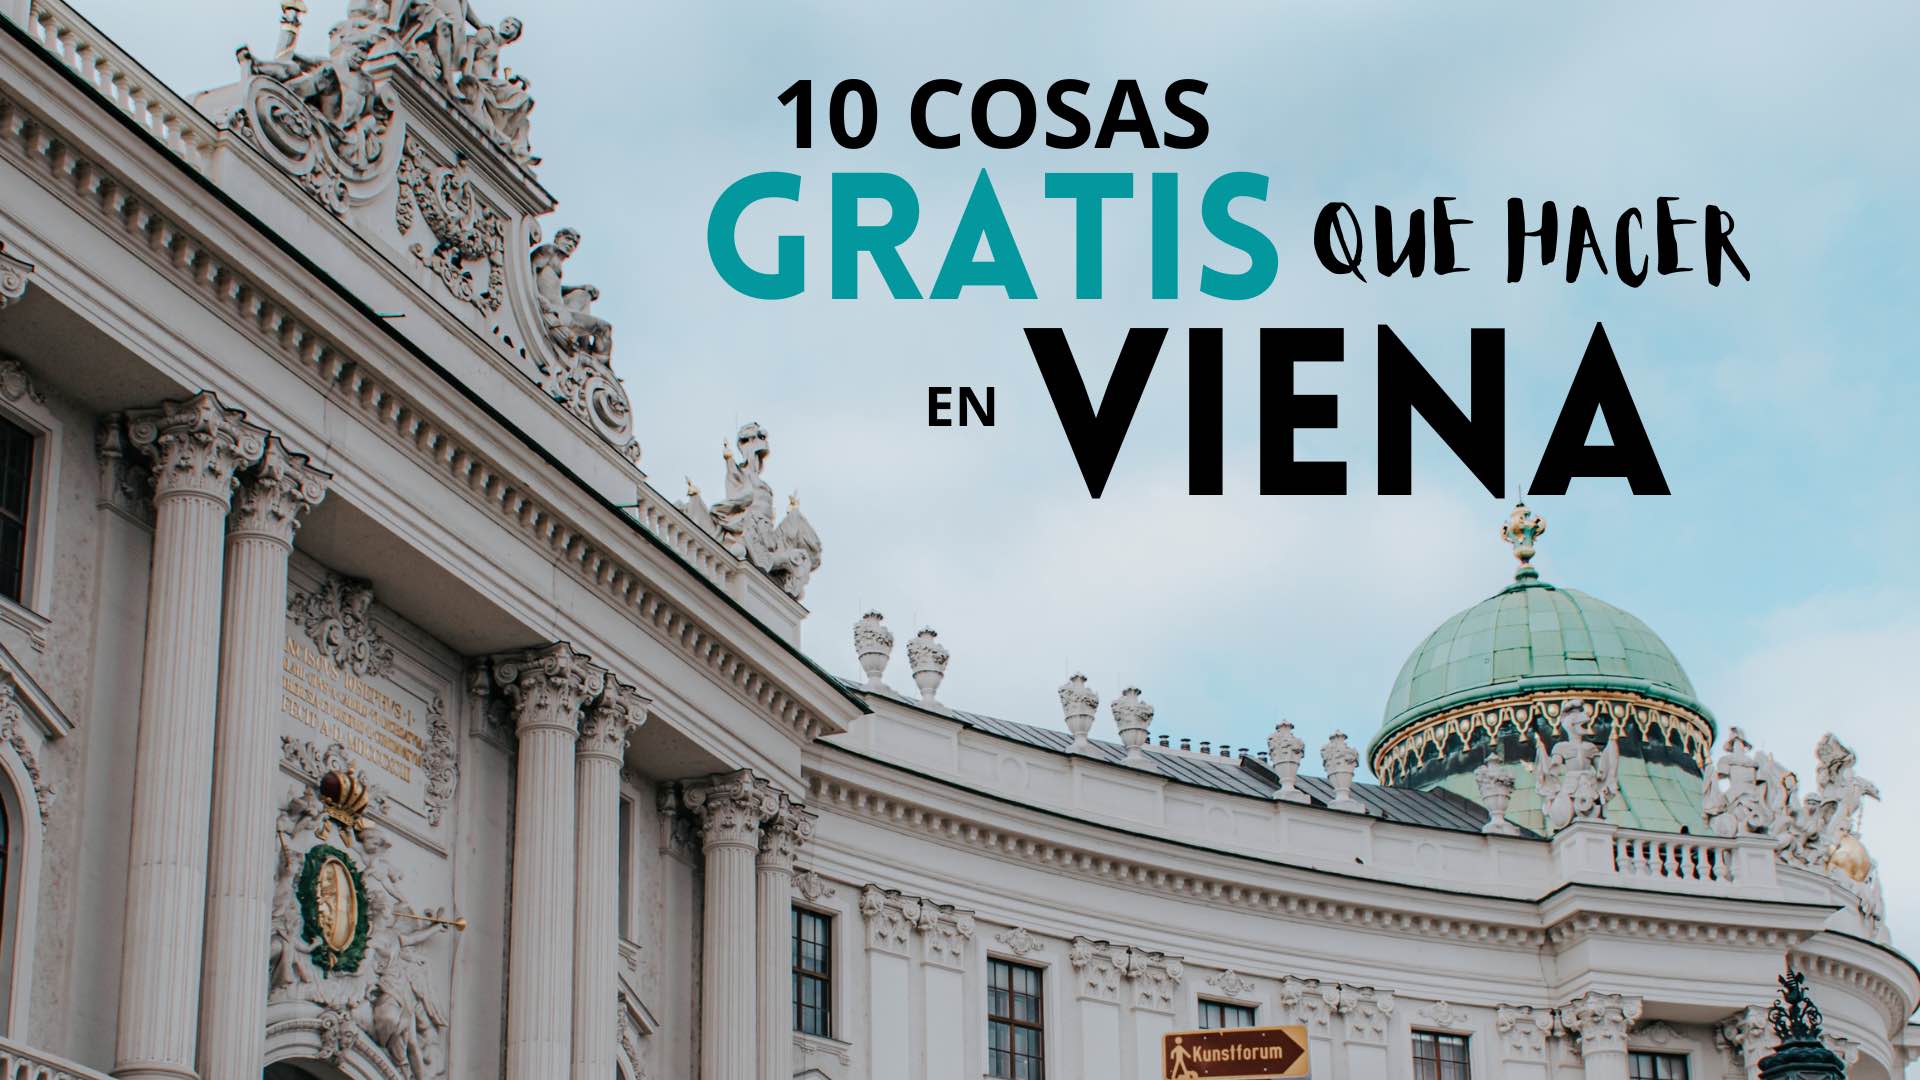 10 cosas gratis que hacer en Viena | www.pasaporteandonos.com